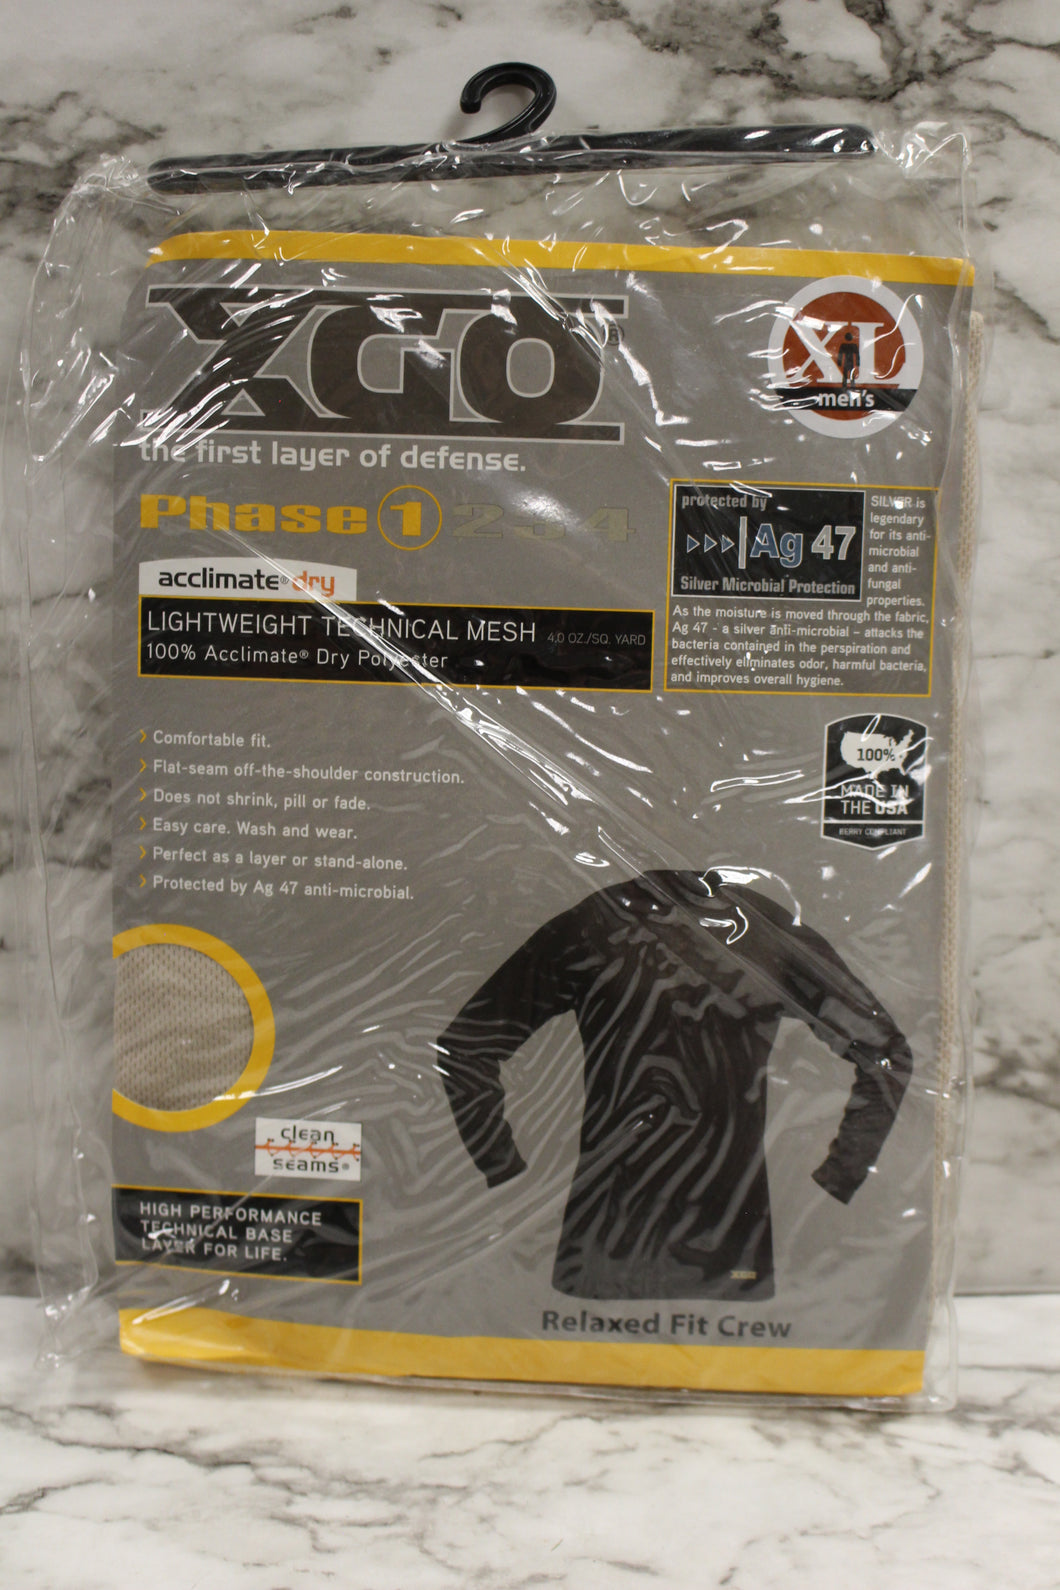 XGO Men's Phase 1 Lightweight Technical Mesh Shirt - Size: XL - Desert Sand -New